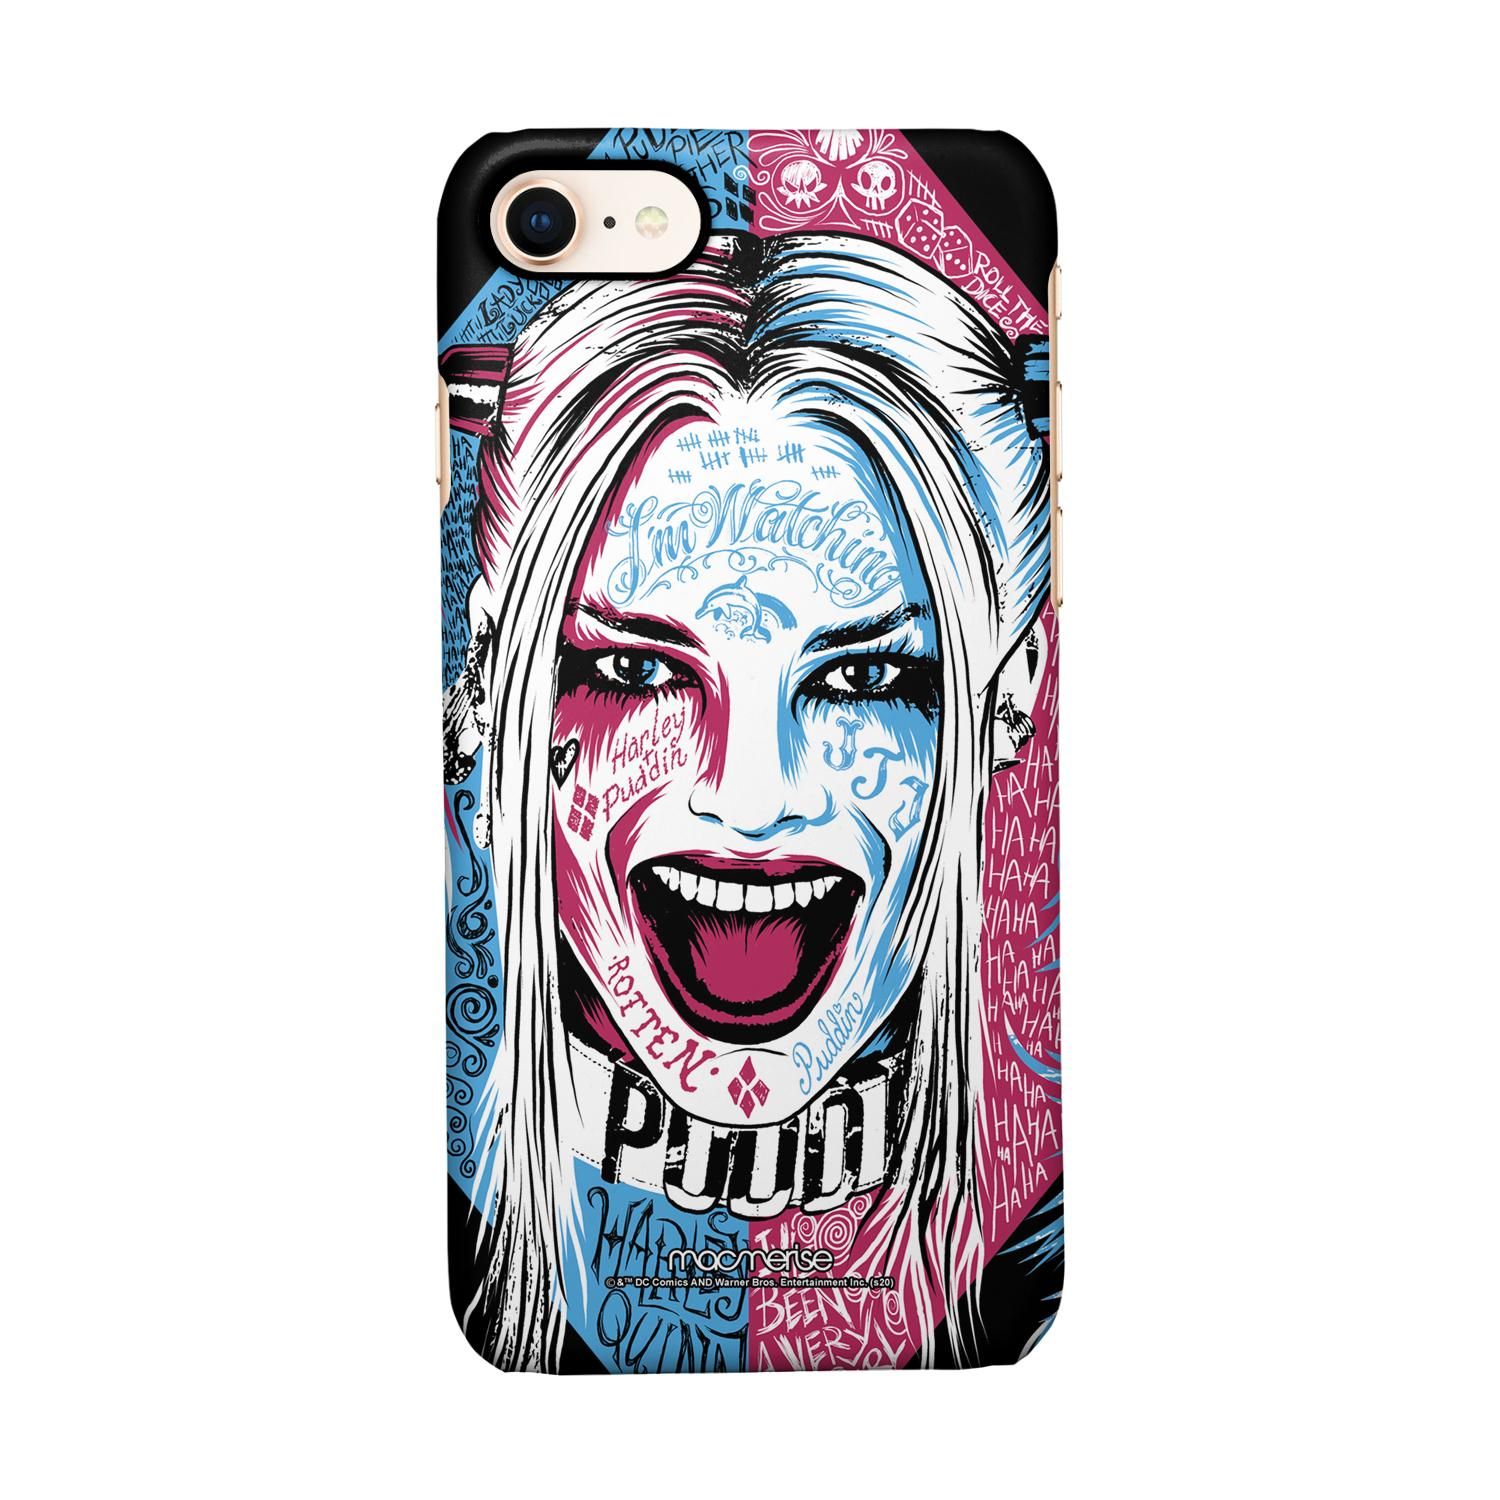 Buy Wicked Harley Quinn - Sleek Phone Case for iPhone 8 Online